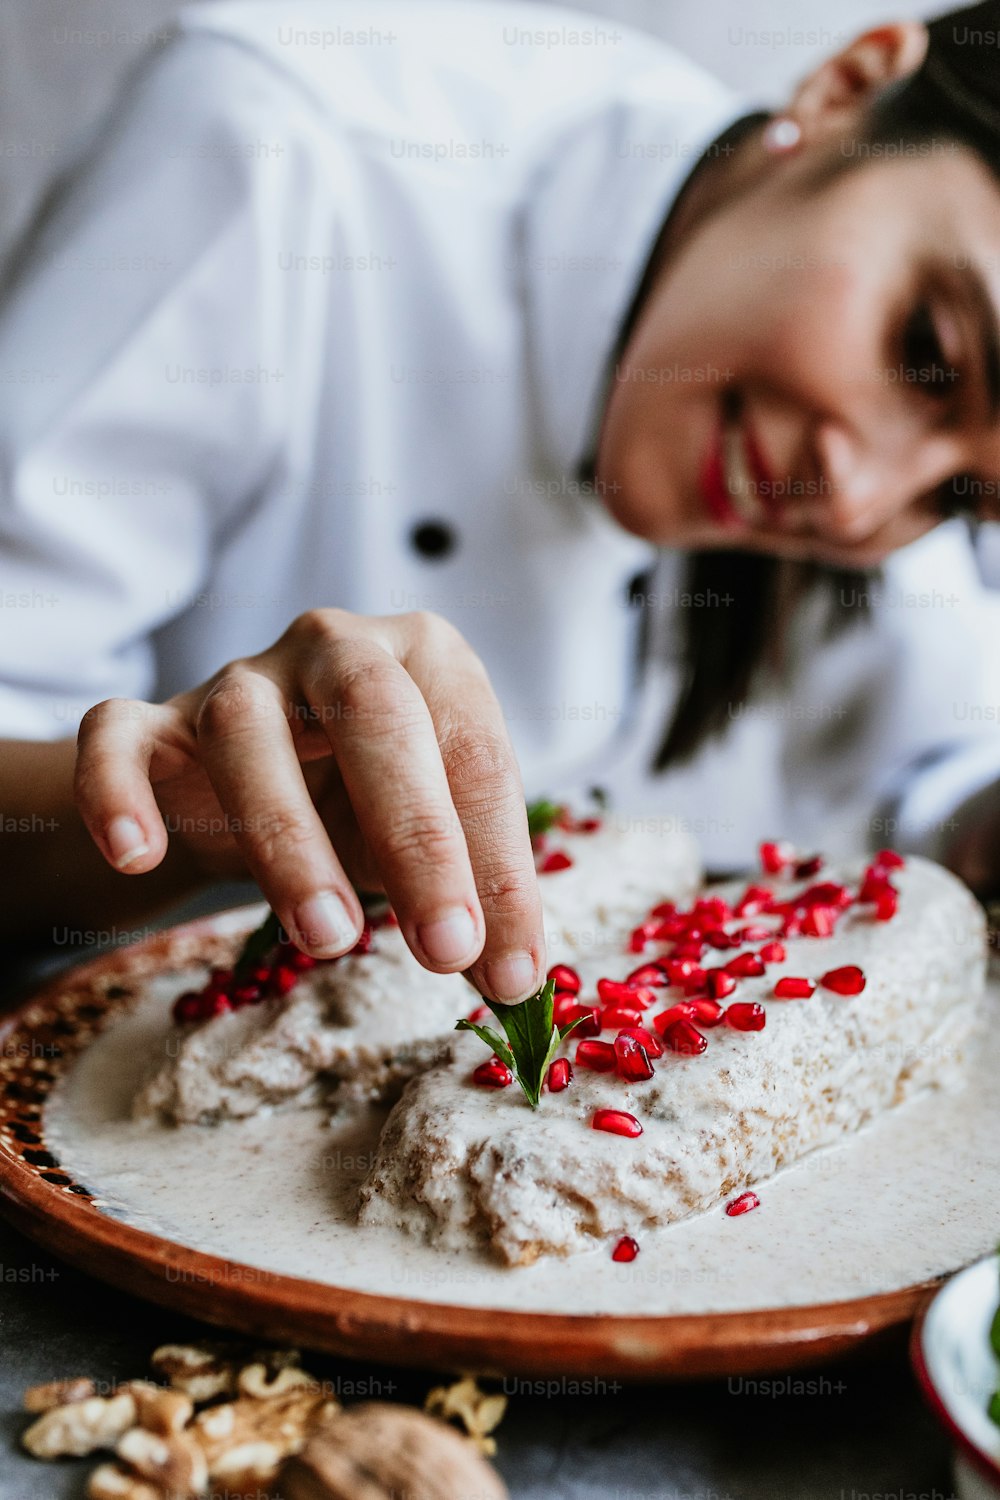 mulher mexicana chef cozinhando chiles en nogada receita com pimentão Poblano e ingredientes, prato tradicional em Puebla México